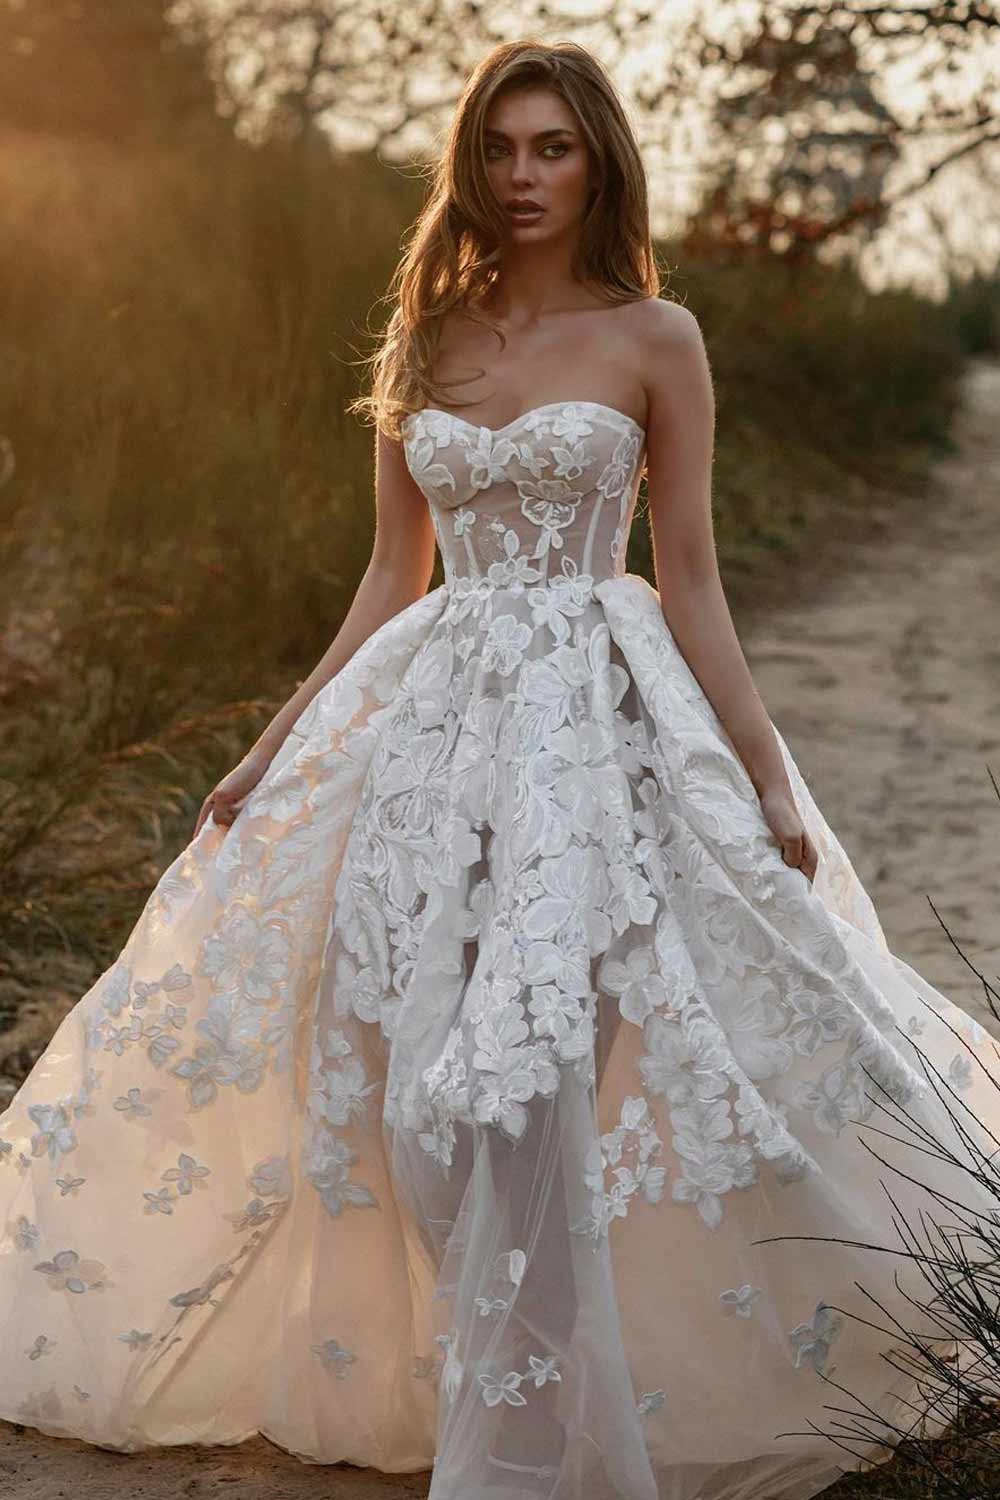 Off the Shoulder Corset Wedding Dress Design